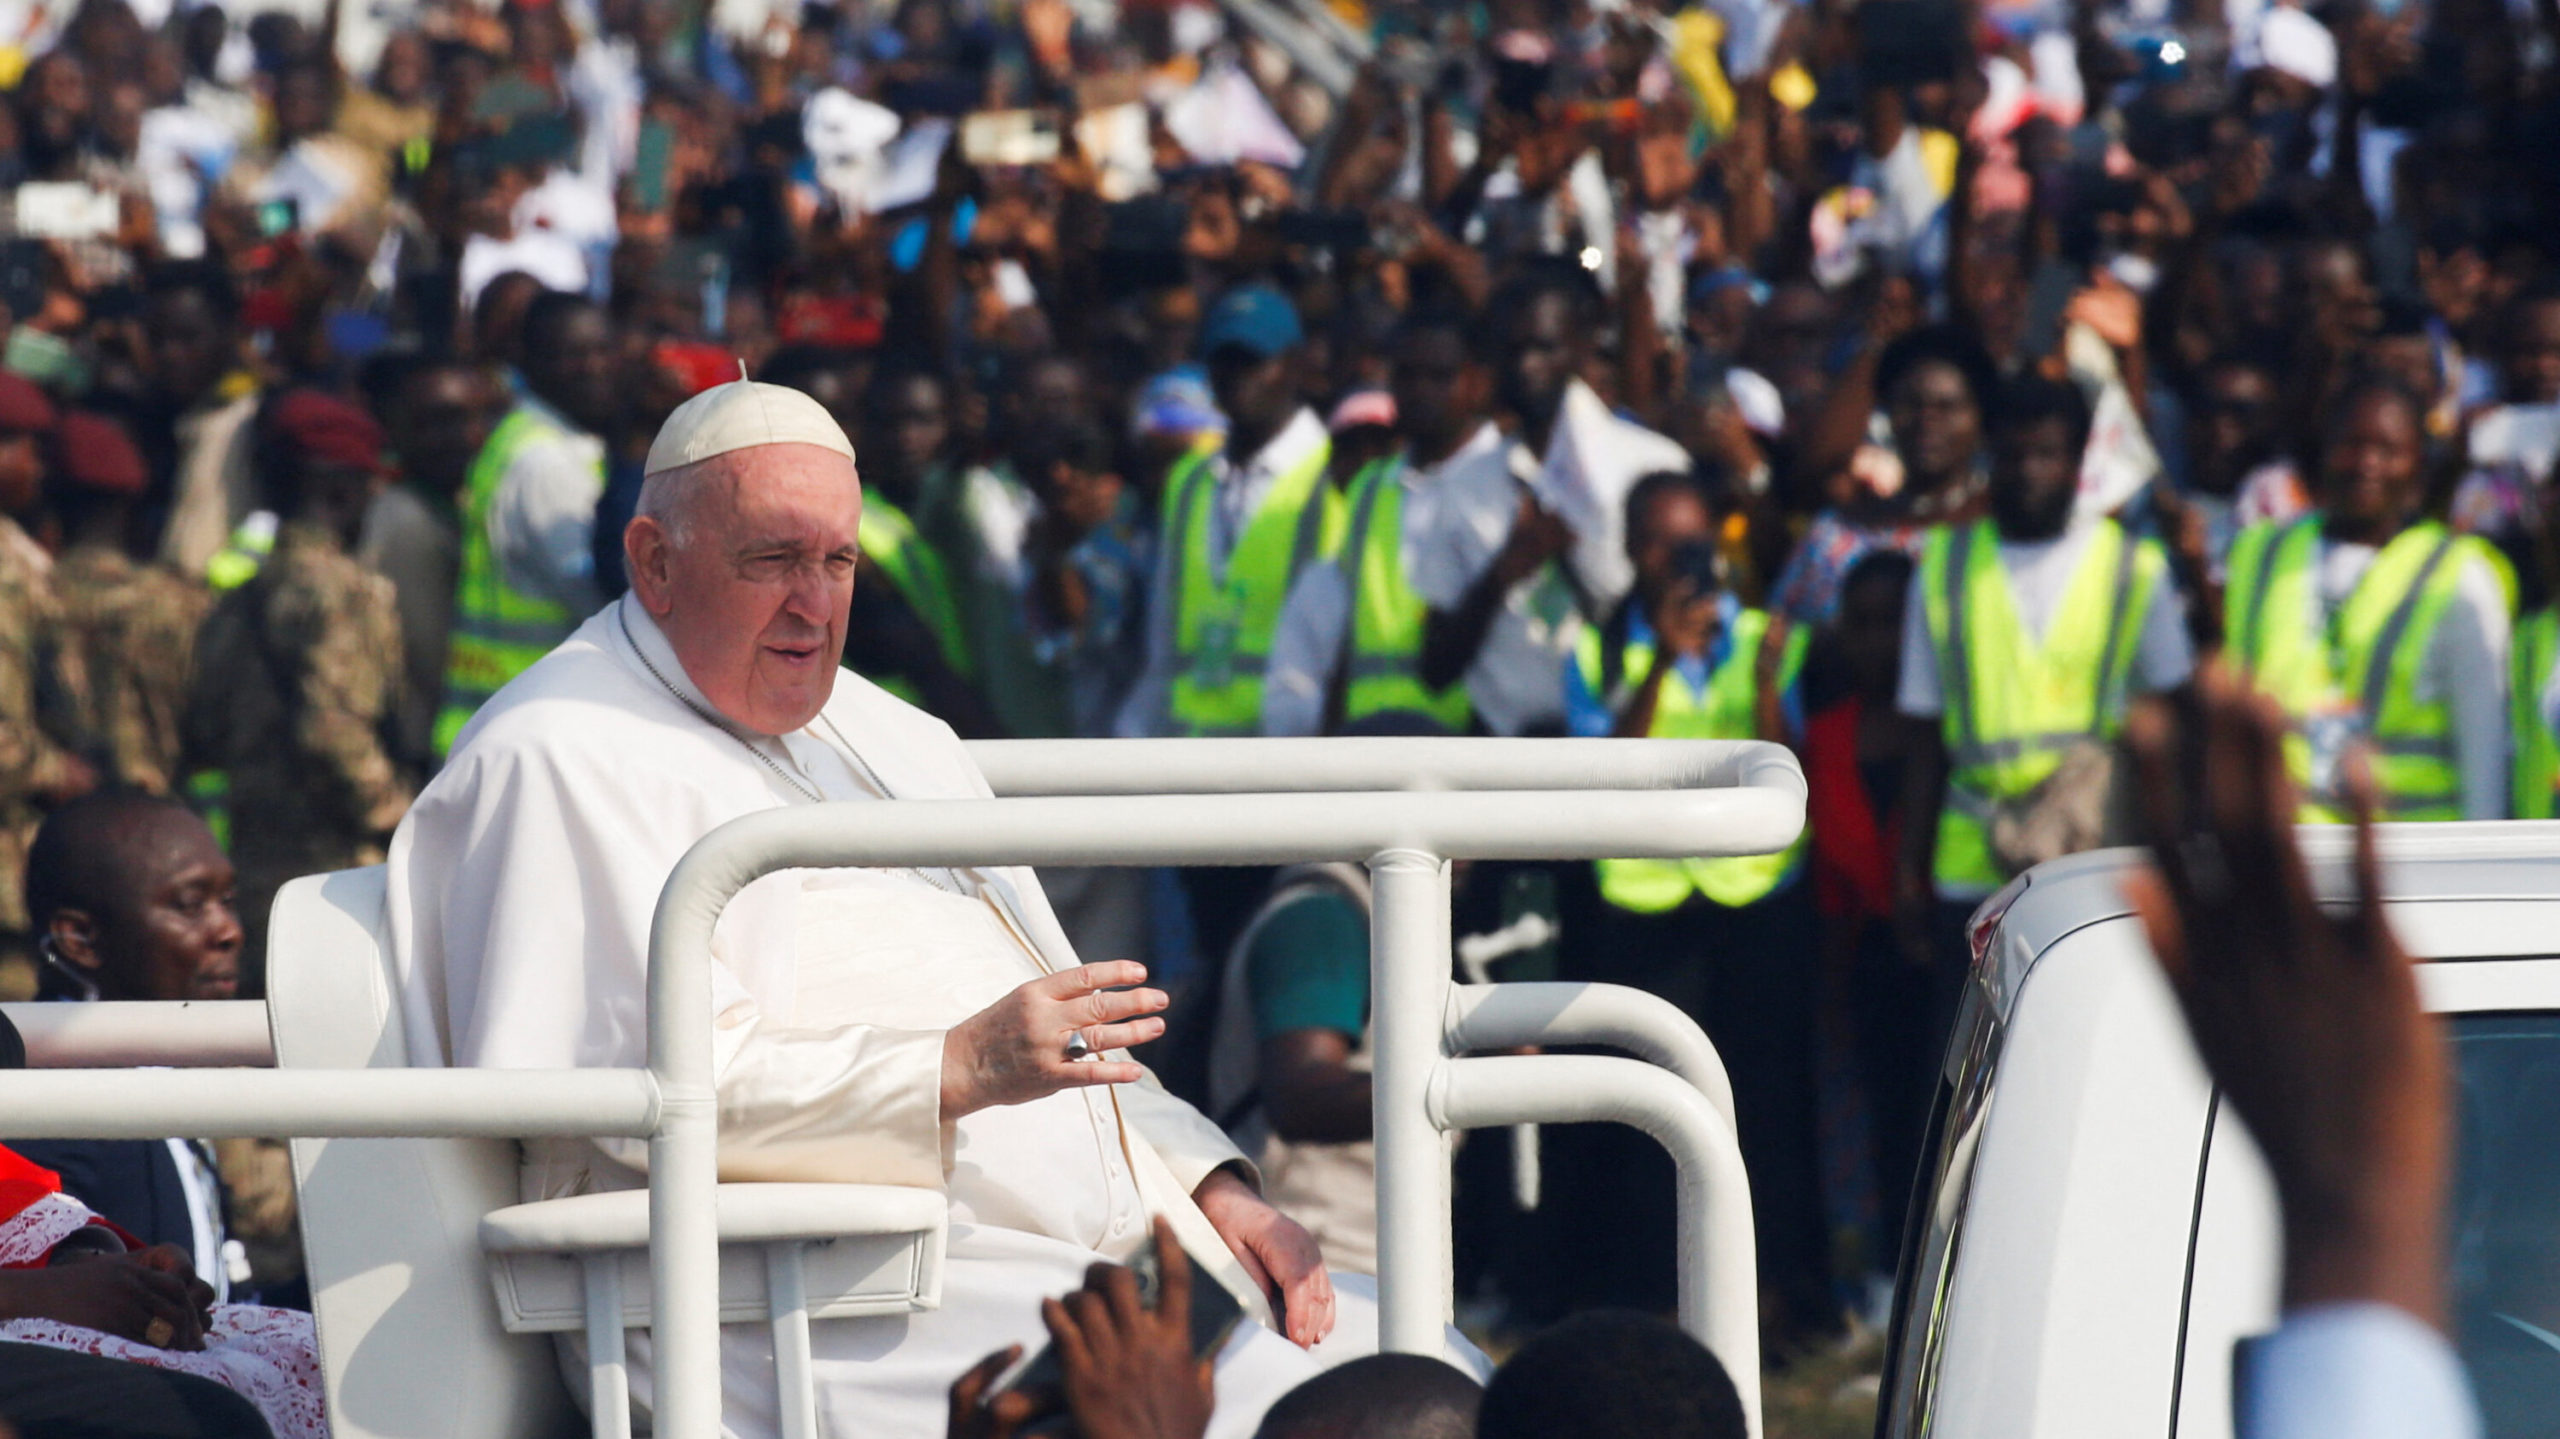 AFRIQUE/ RELIGION CATHOLIQUE : le pape François en Afrique (RD Congo, Sud Soudan)